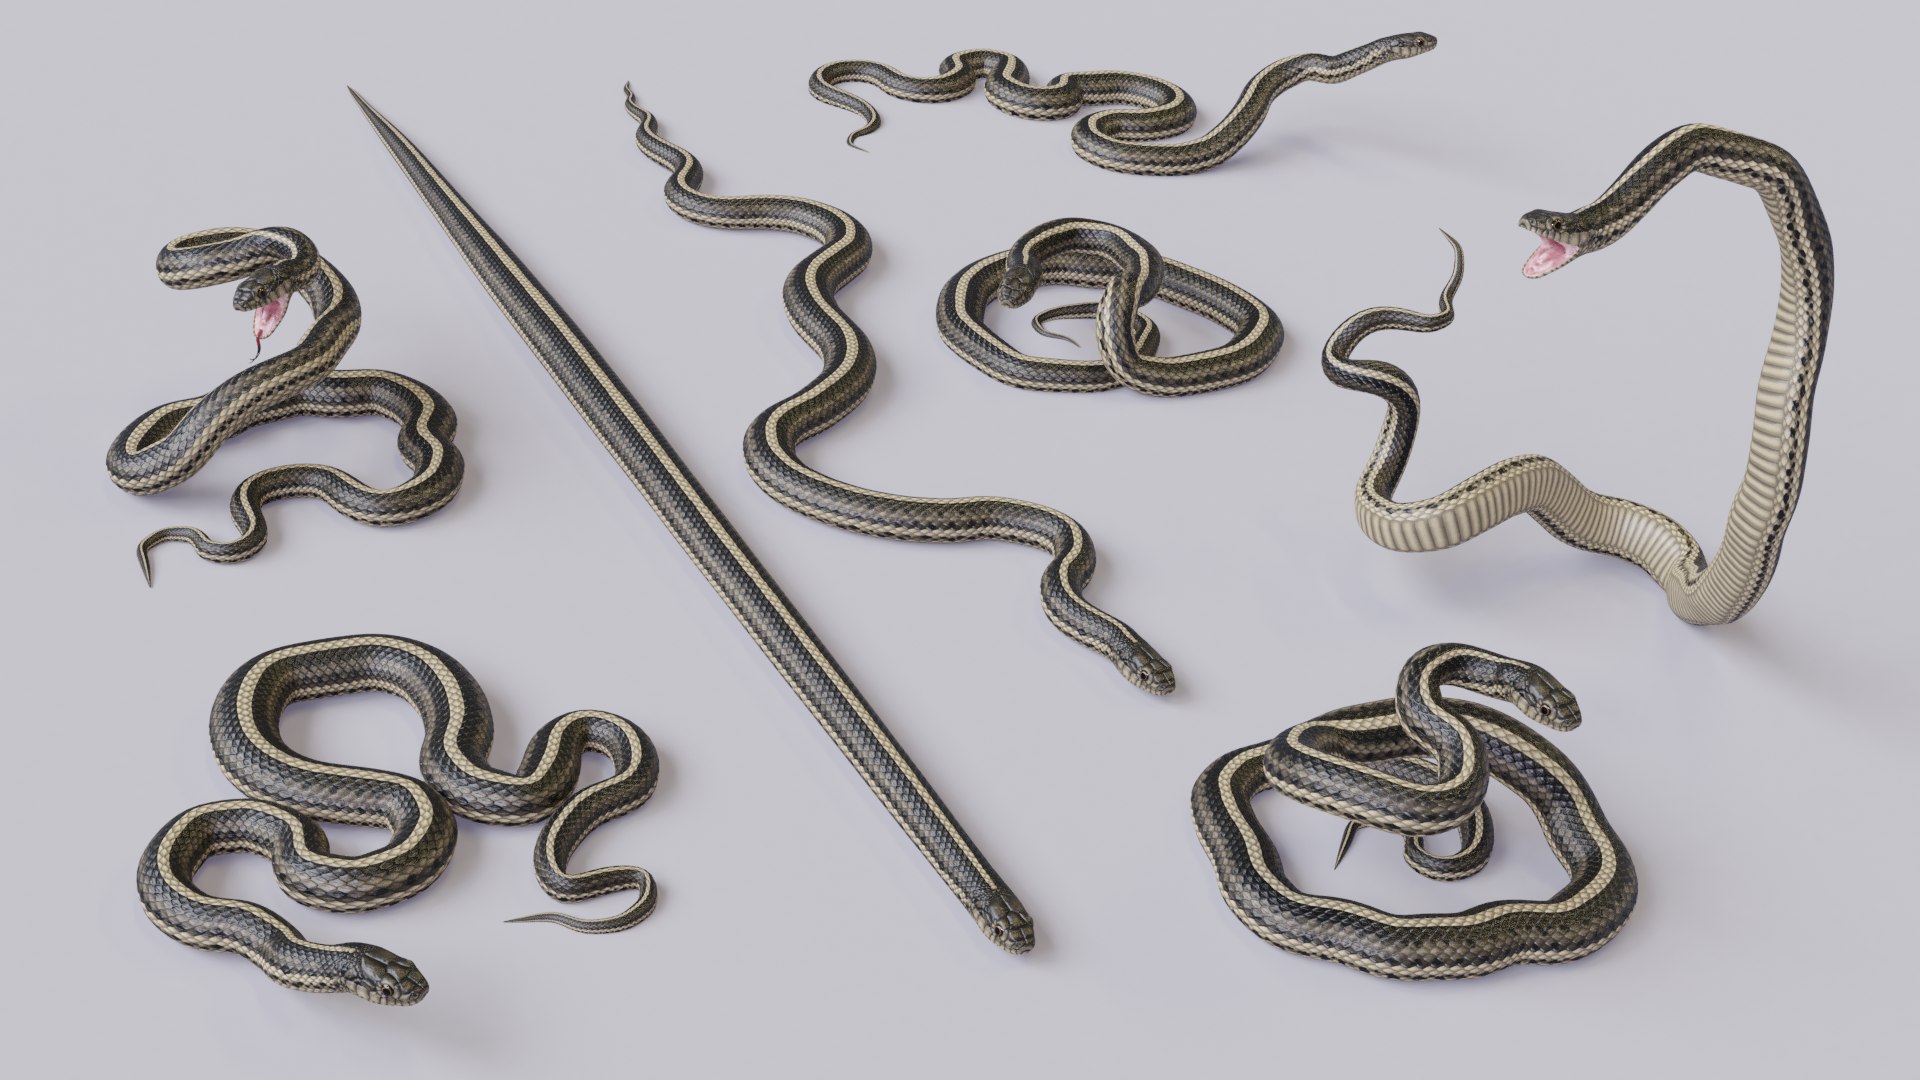 Animated Garter Snake - 3D Model by Dibia Digital